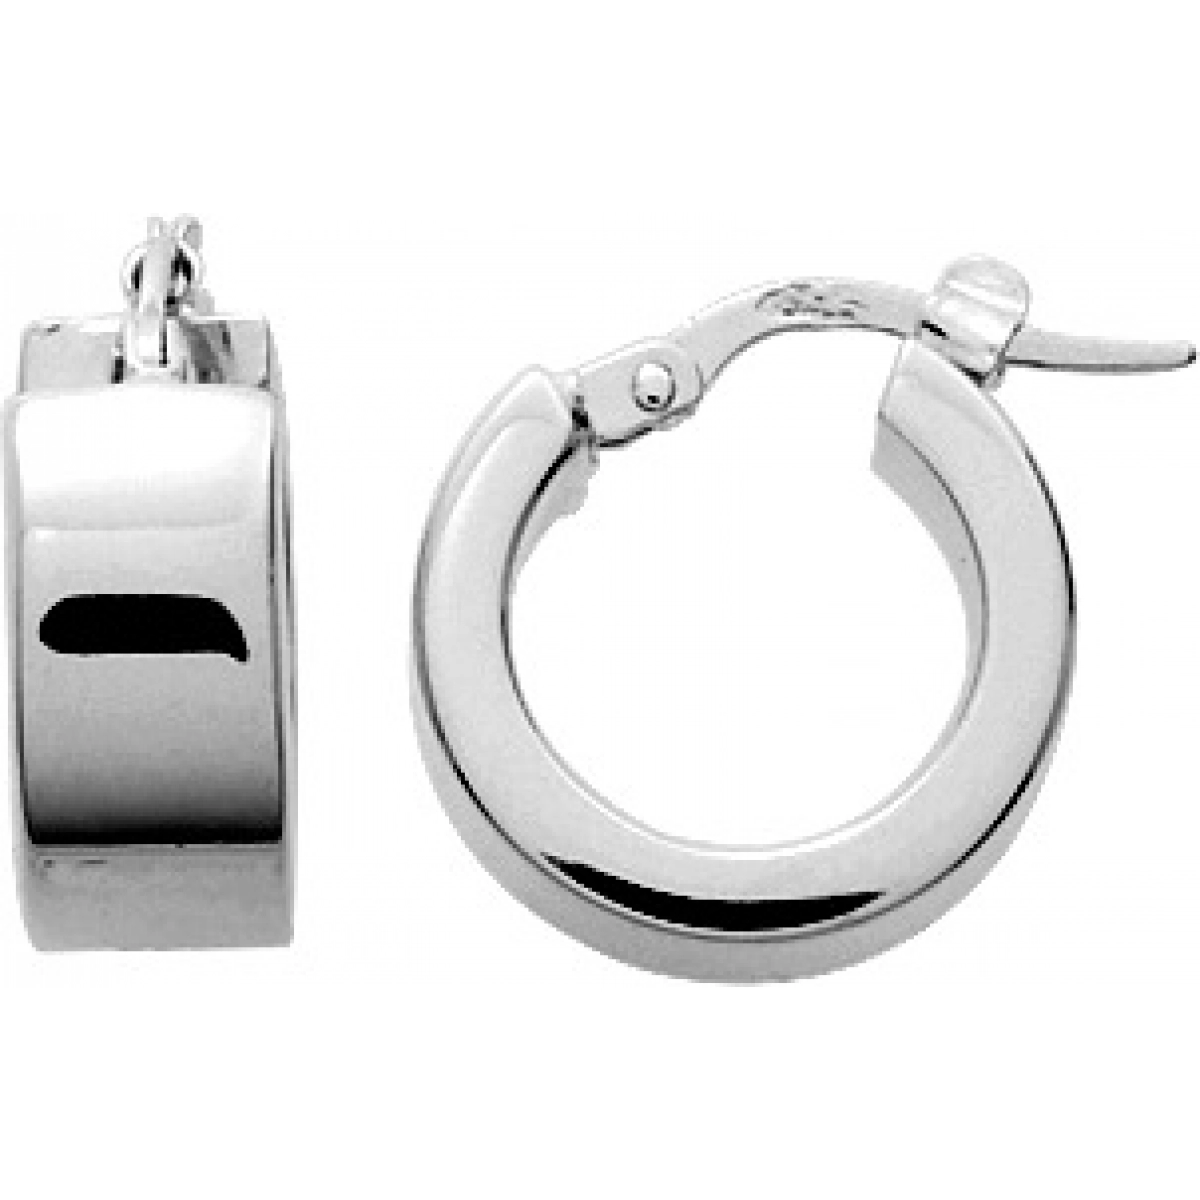 Hoops earrings pair rh925 Silver  Lua Blanca  305576.0